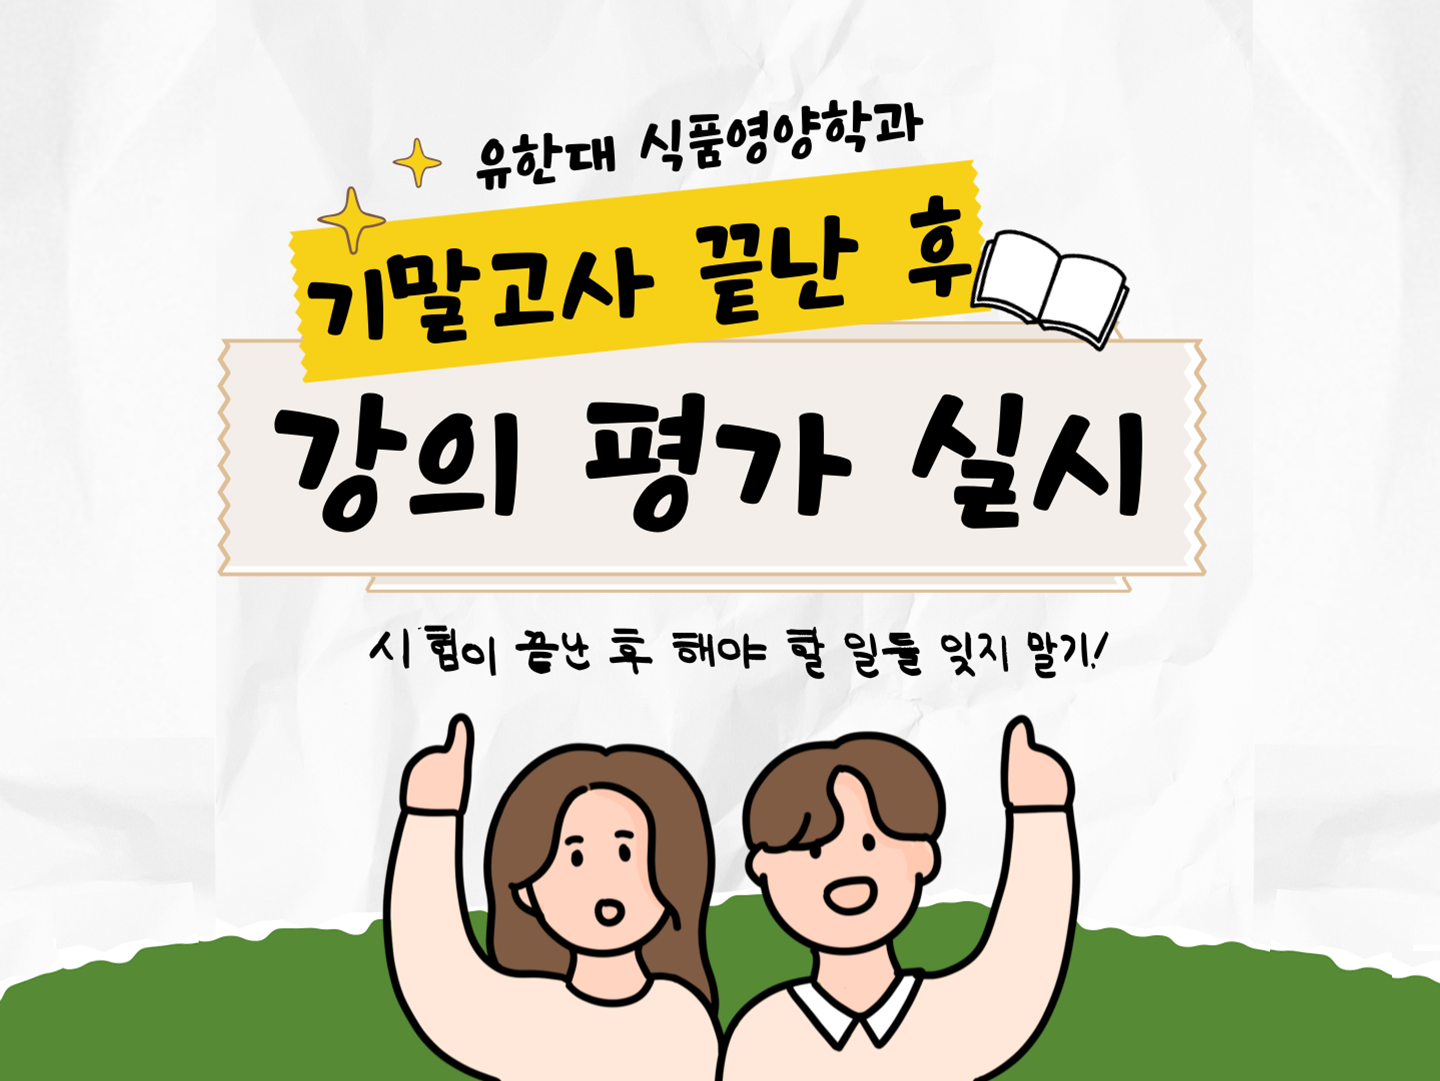 유한대학교 식품영양학과 <기말고사 후 강의평가> 안내